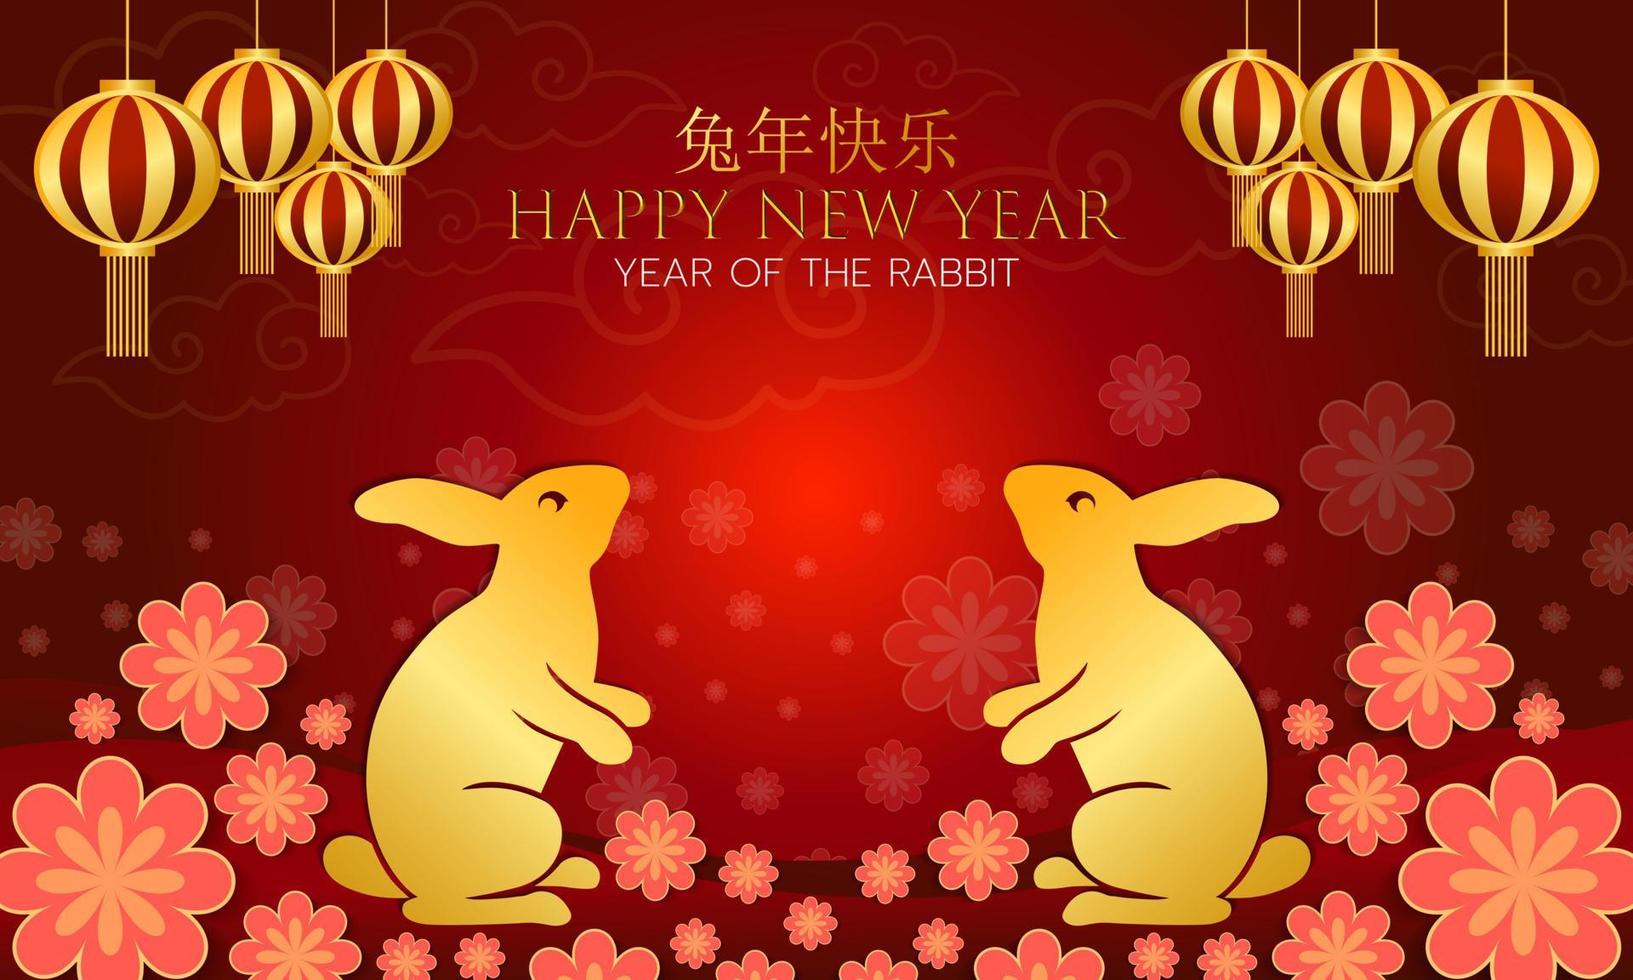 Chinesisches Neujahr. jahr des kaninchens rot und gold im hintergrund. Vektordesign.illustration. vektor